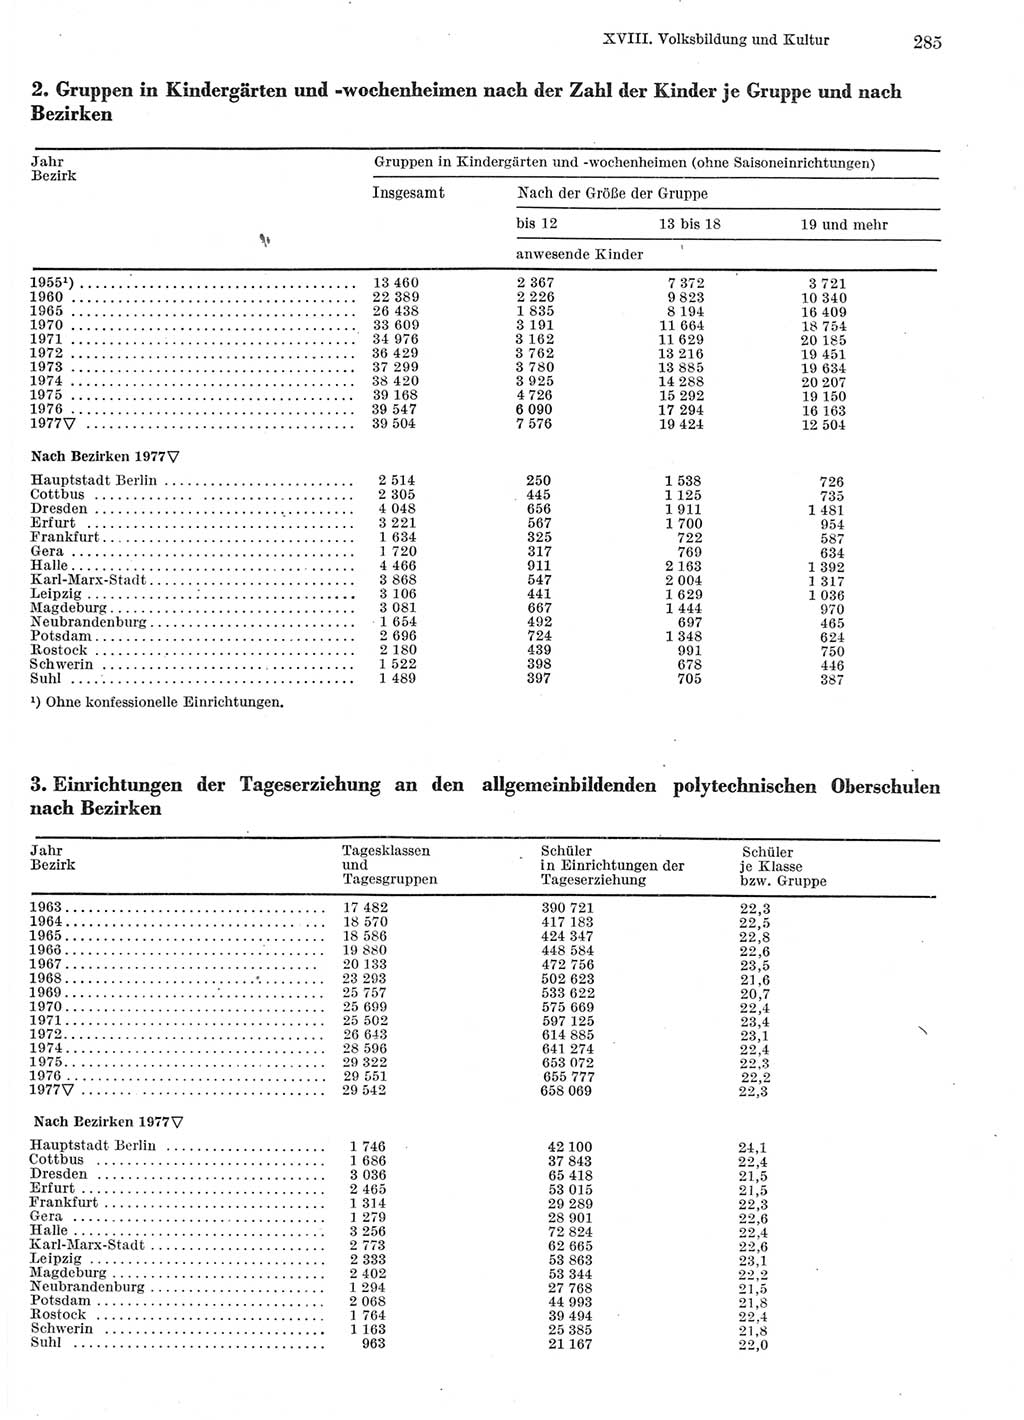 Statistisches Jahrbuch der Deutschen Demokratischen Republik (DDR) 1978, Seite 285 (Stat. Jb. DDR 1978, S. 285)